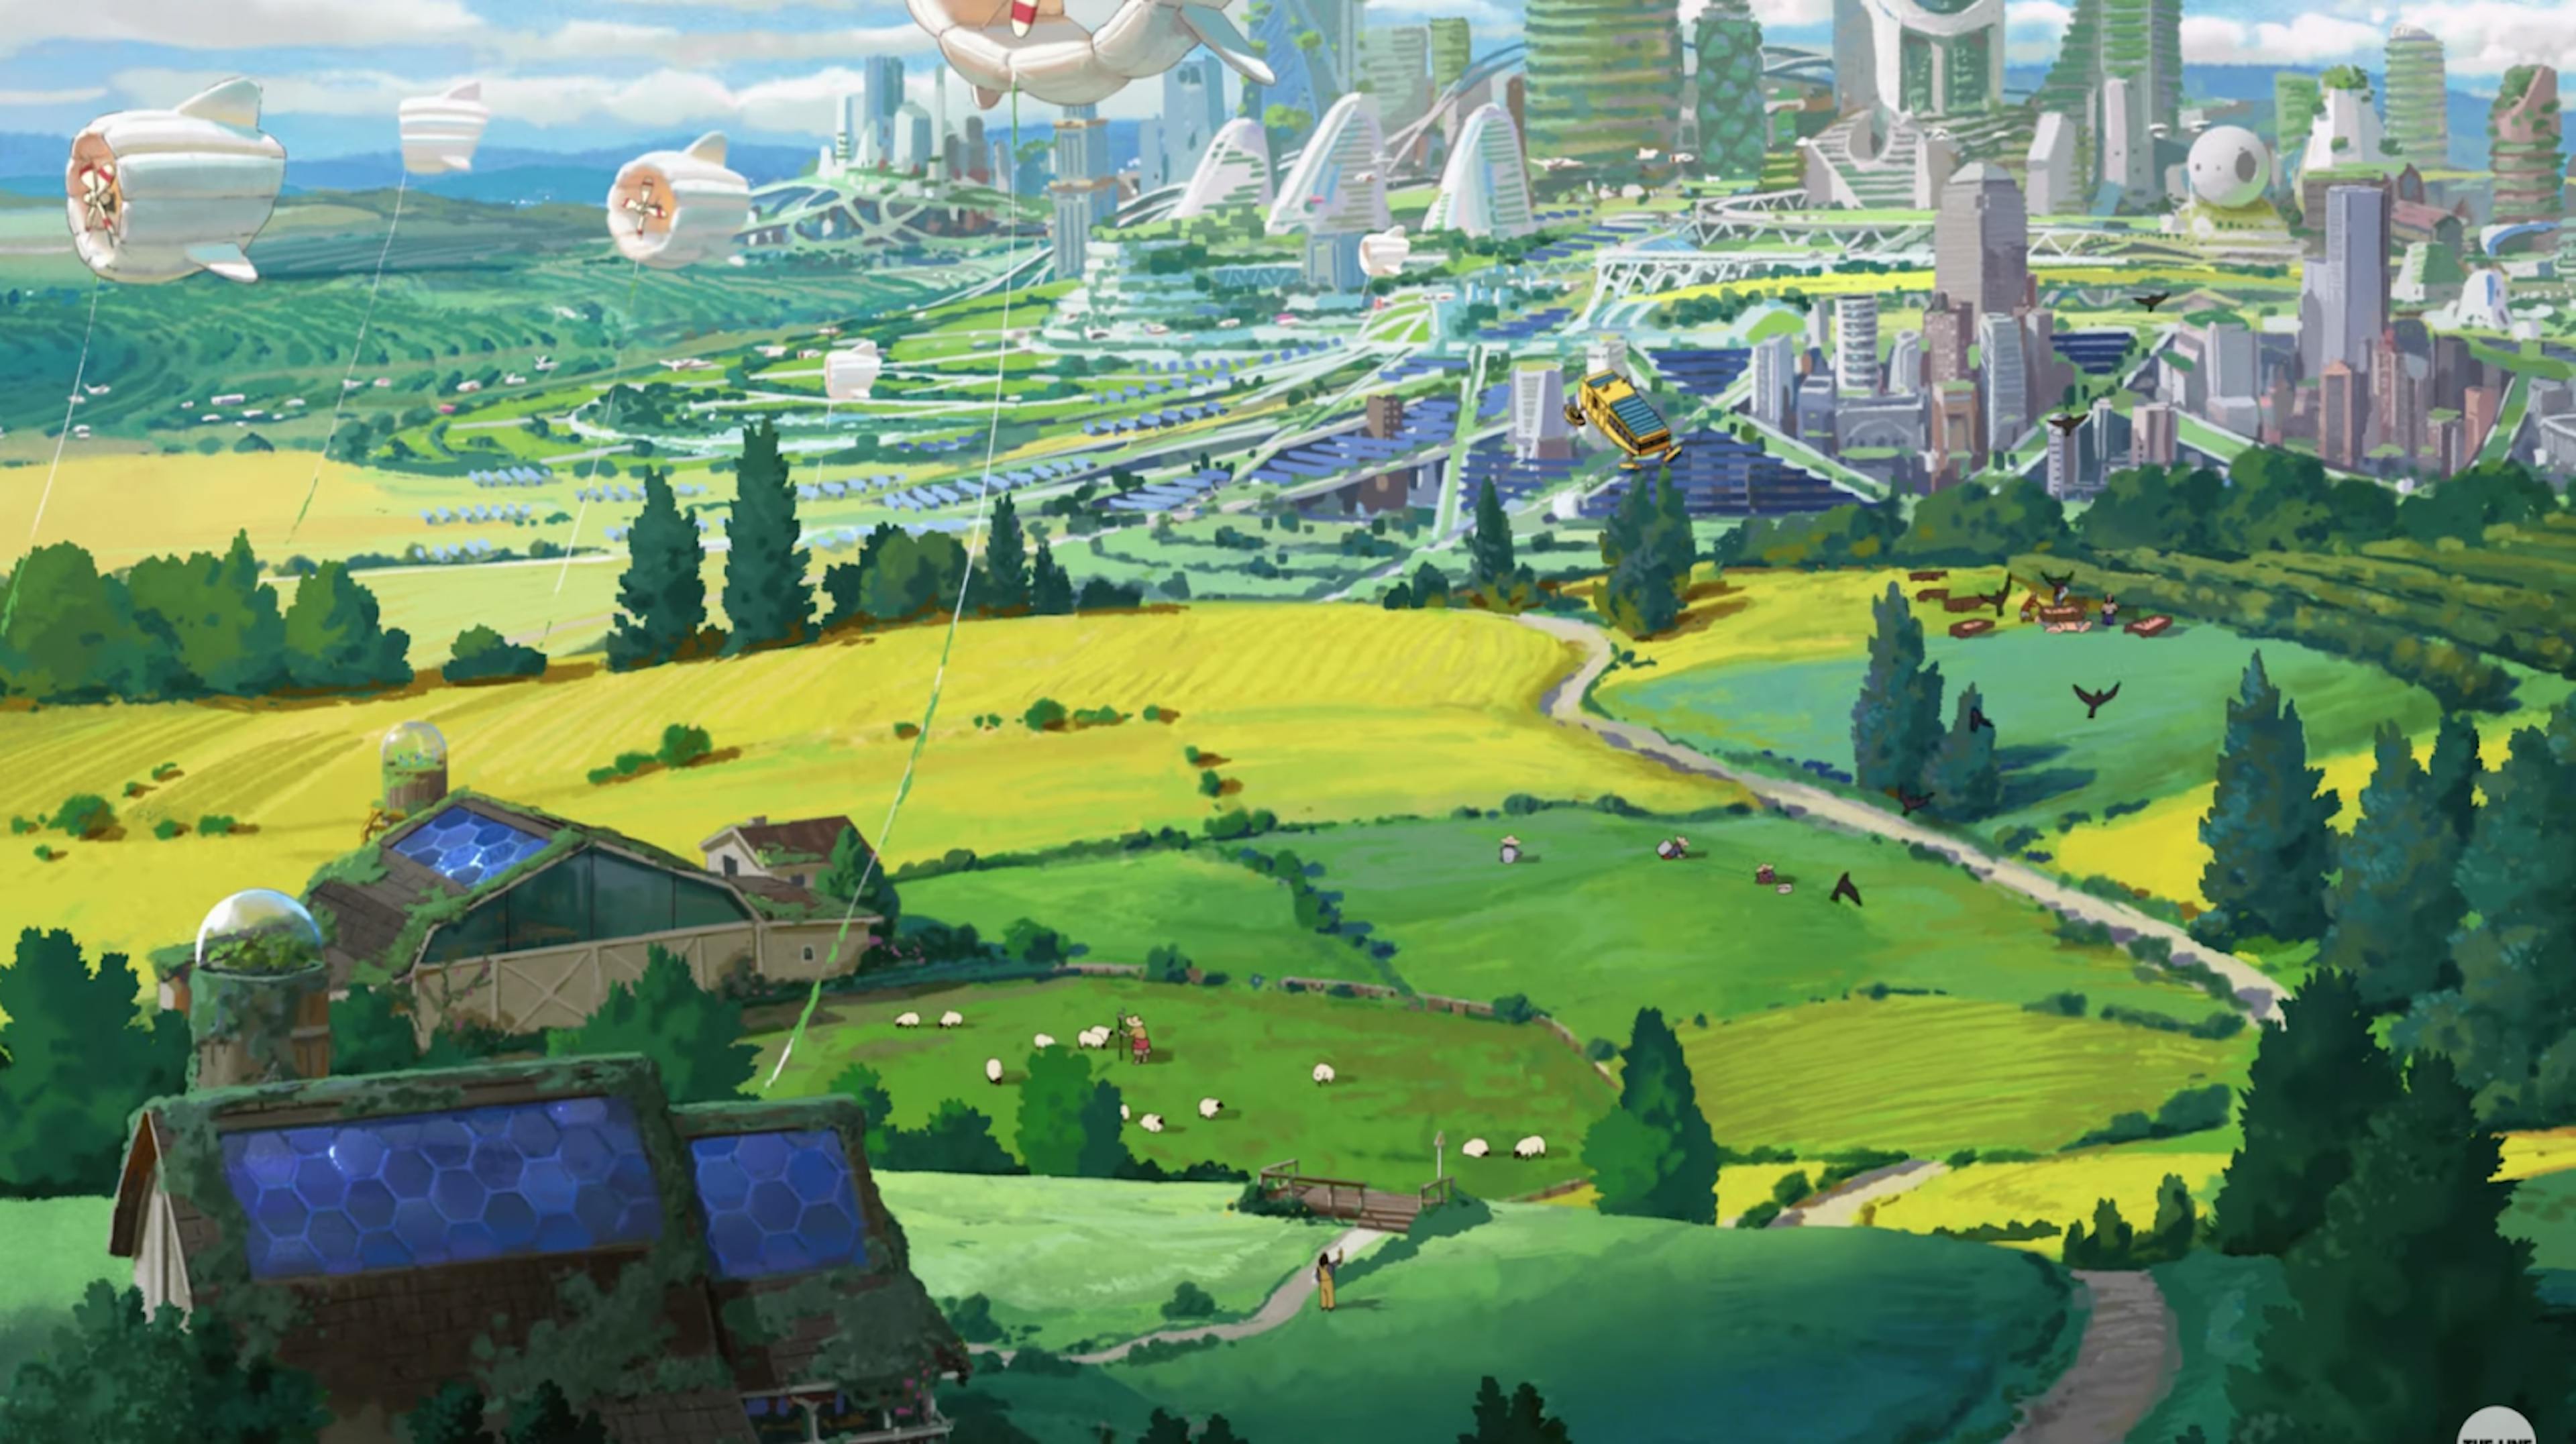 Uma imagem do comercial de anime Chobani, Dear Alice, da The Line; apresentando um futuro solarpunk e uma partitura de um compositor Ghibli. Disponível em https://www.youtube.com/watch?v=z-Ng5ZvrDm4.